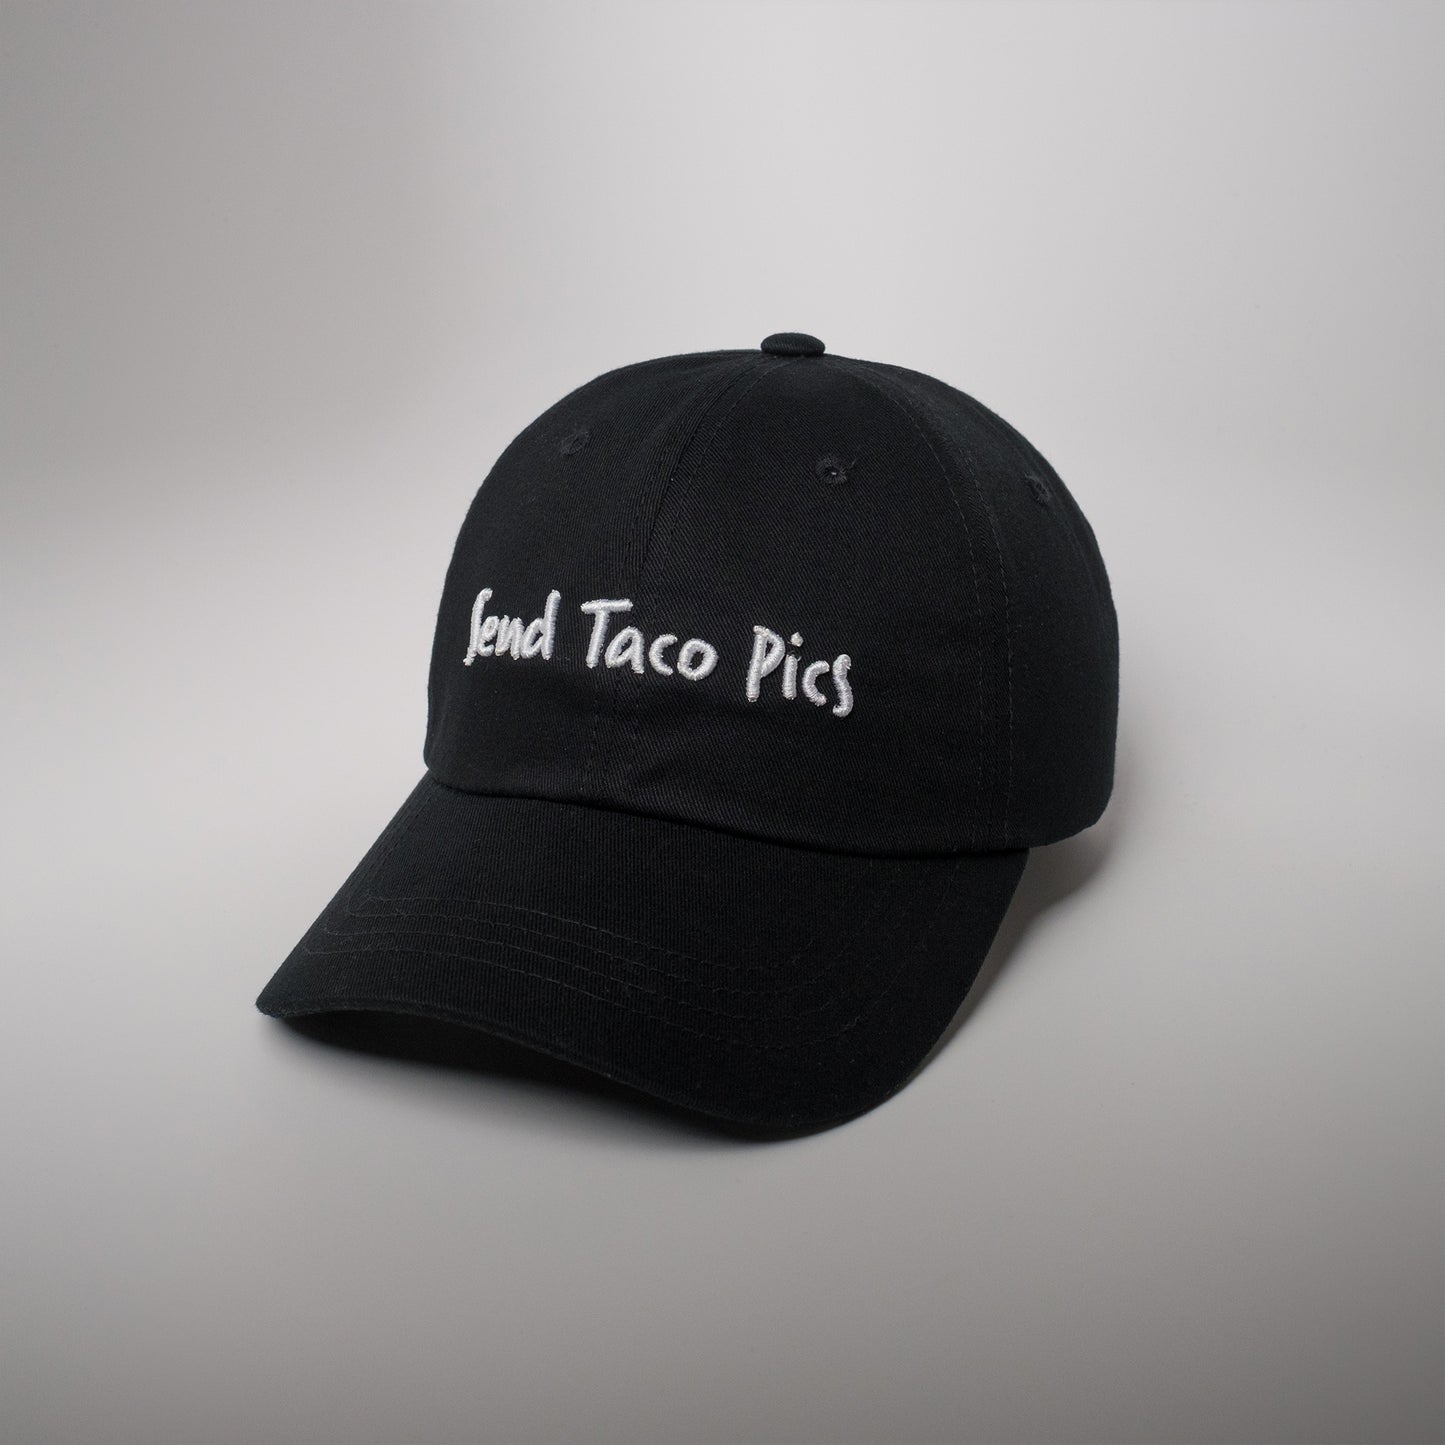 Send Taco Pics Dad Hat